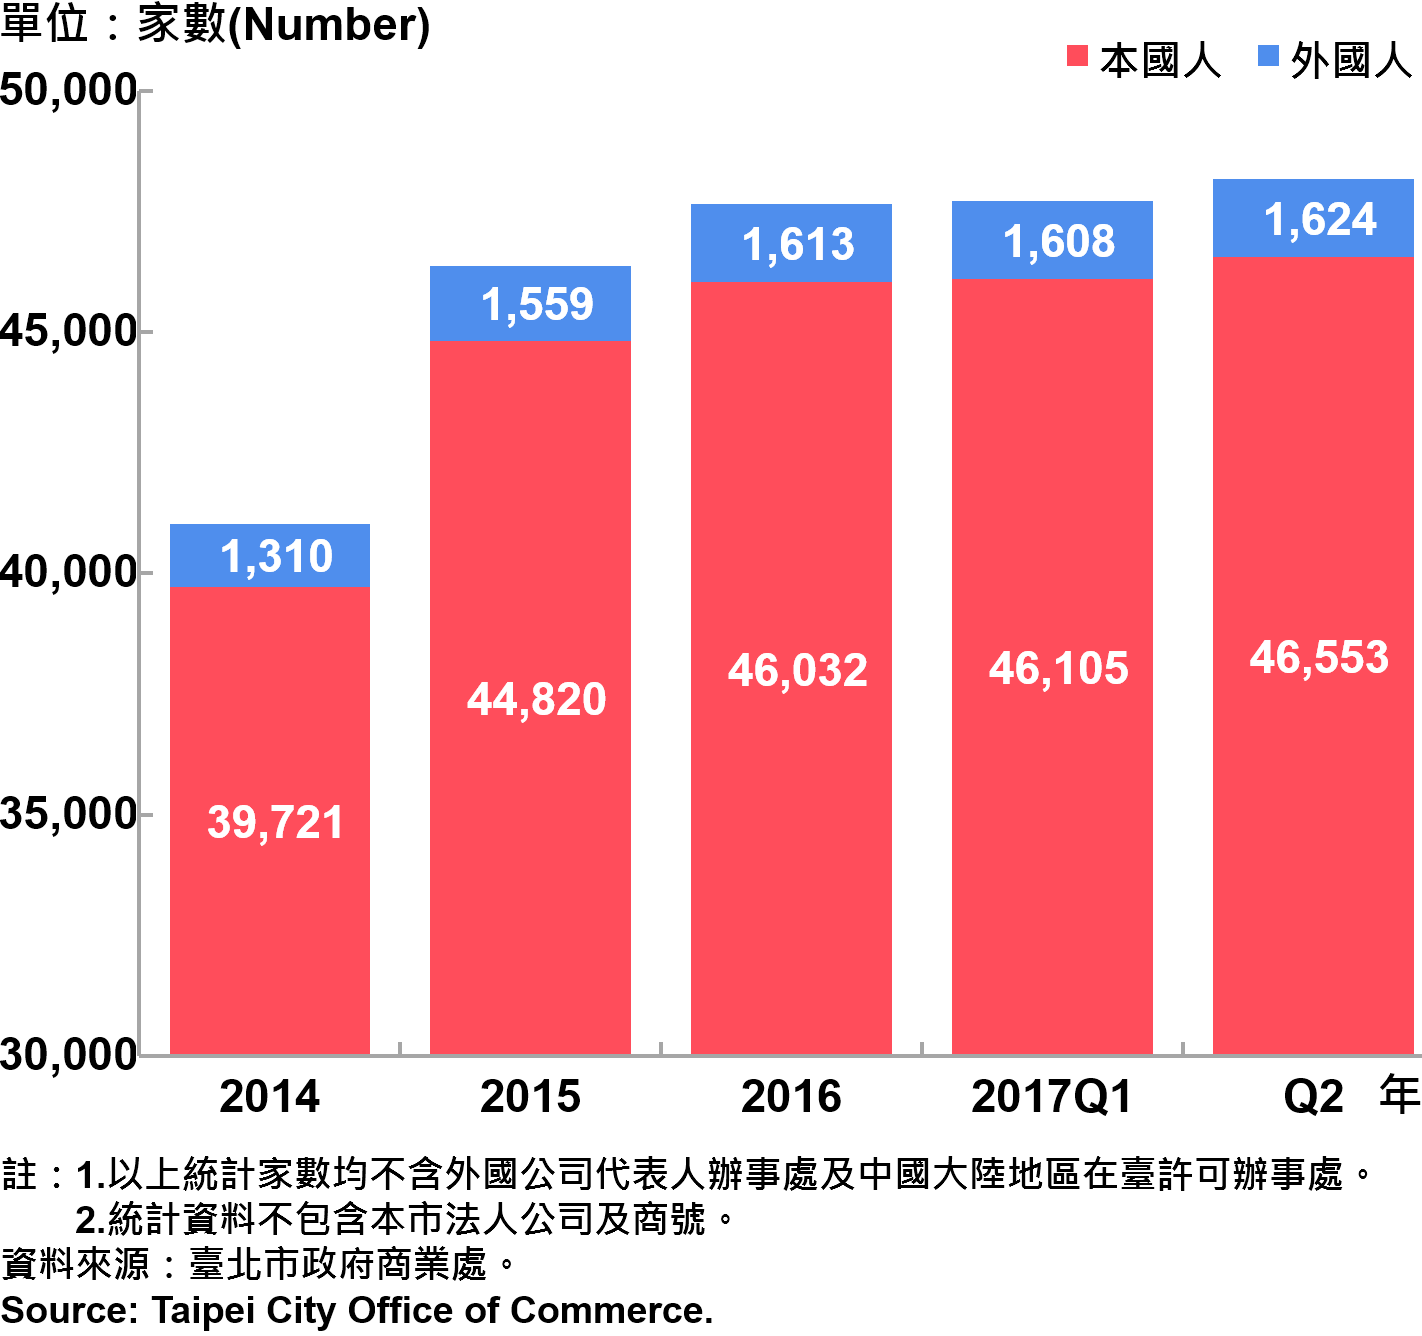 圖21、臺北市公司青創負責人為本國人與外國人分布情形—依現存家數—2017Q2 Responsible Person of Newly Registered Companies In Taipei City by Nationality - Number of Current—2017Q2